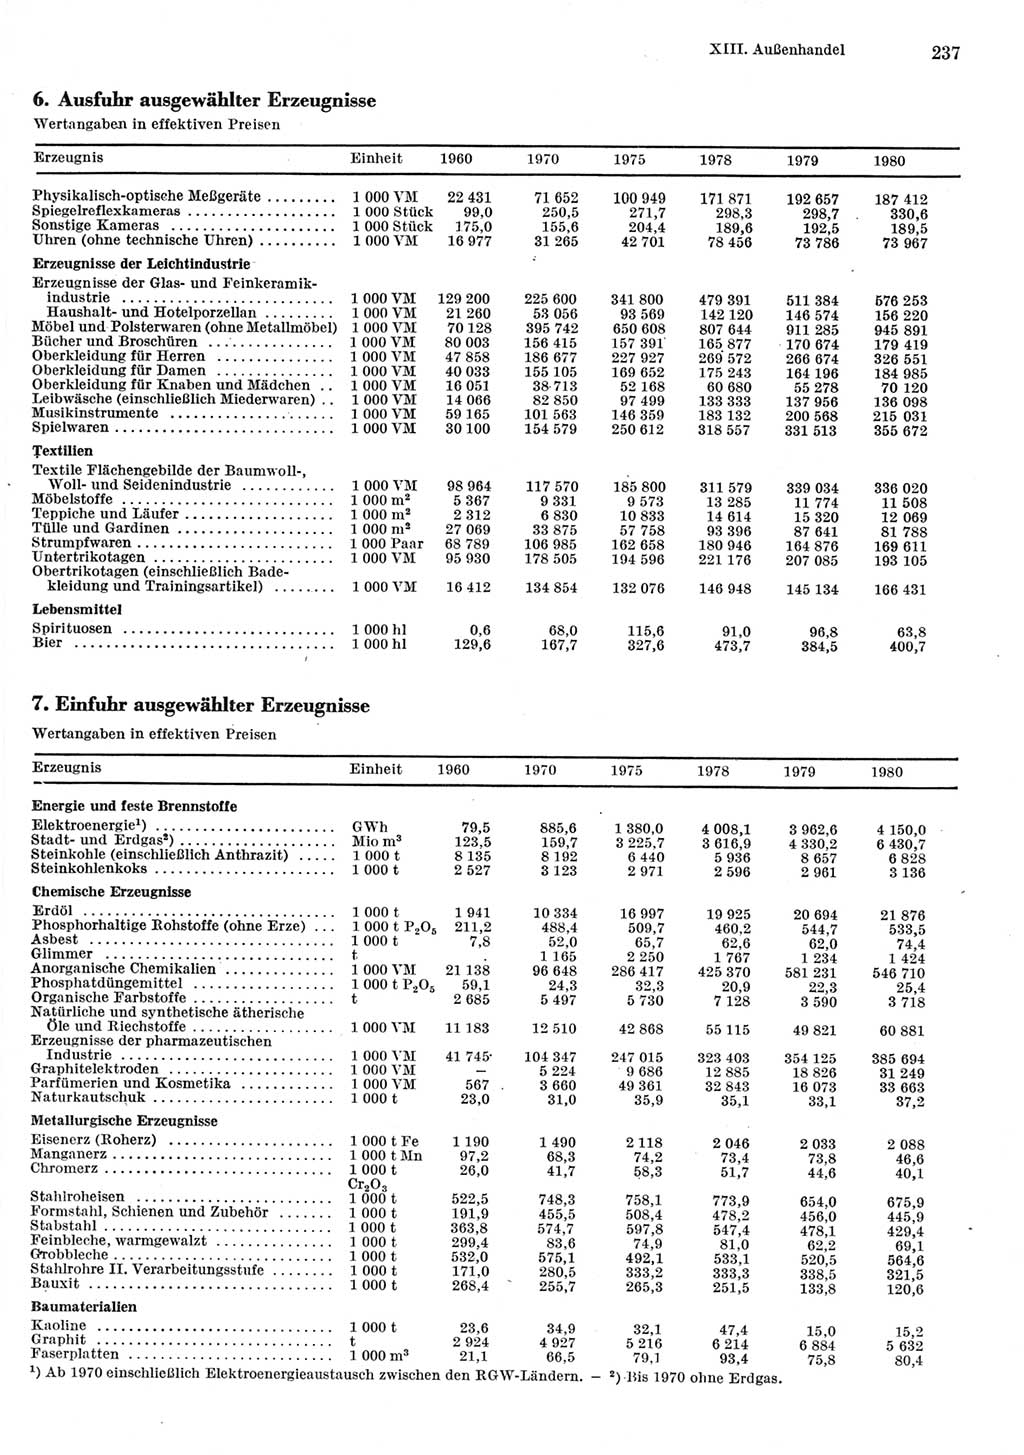 Statistisches Jahrbuch der Deutschen Demokratischen Republik (DDR) 1981, Seite 237 (Stat. Jb. DDR 1981, S. 237)